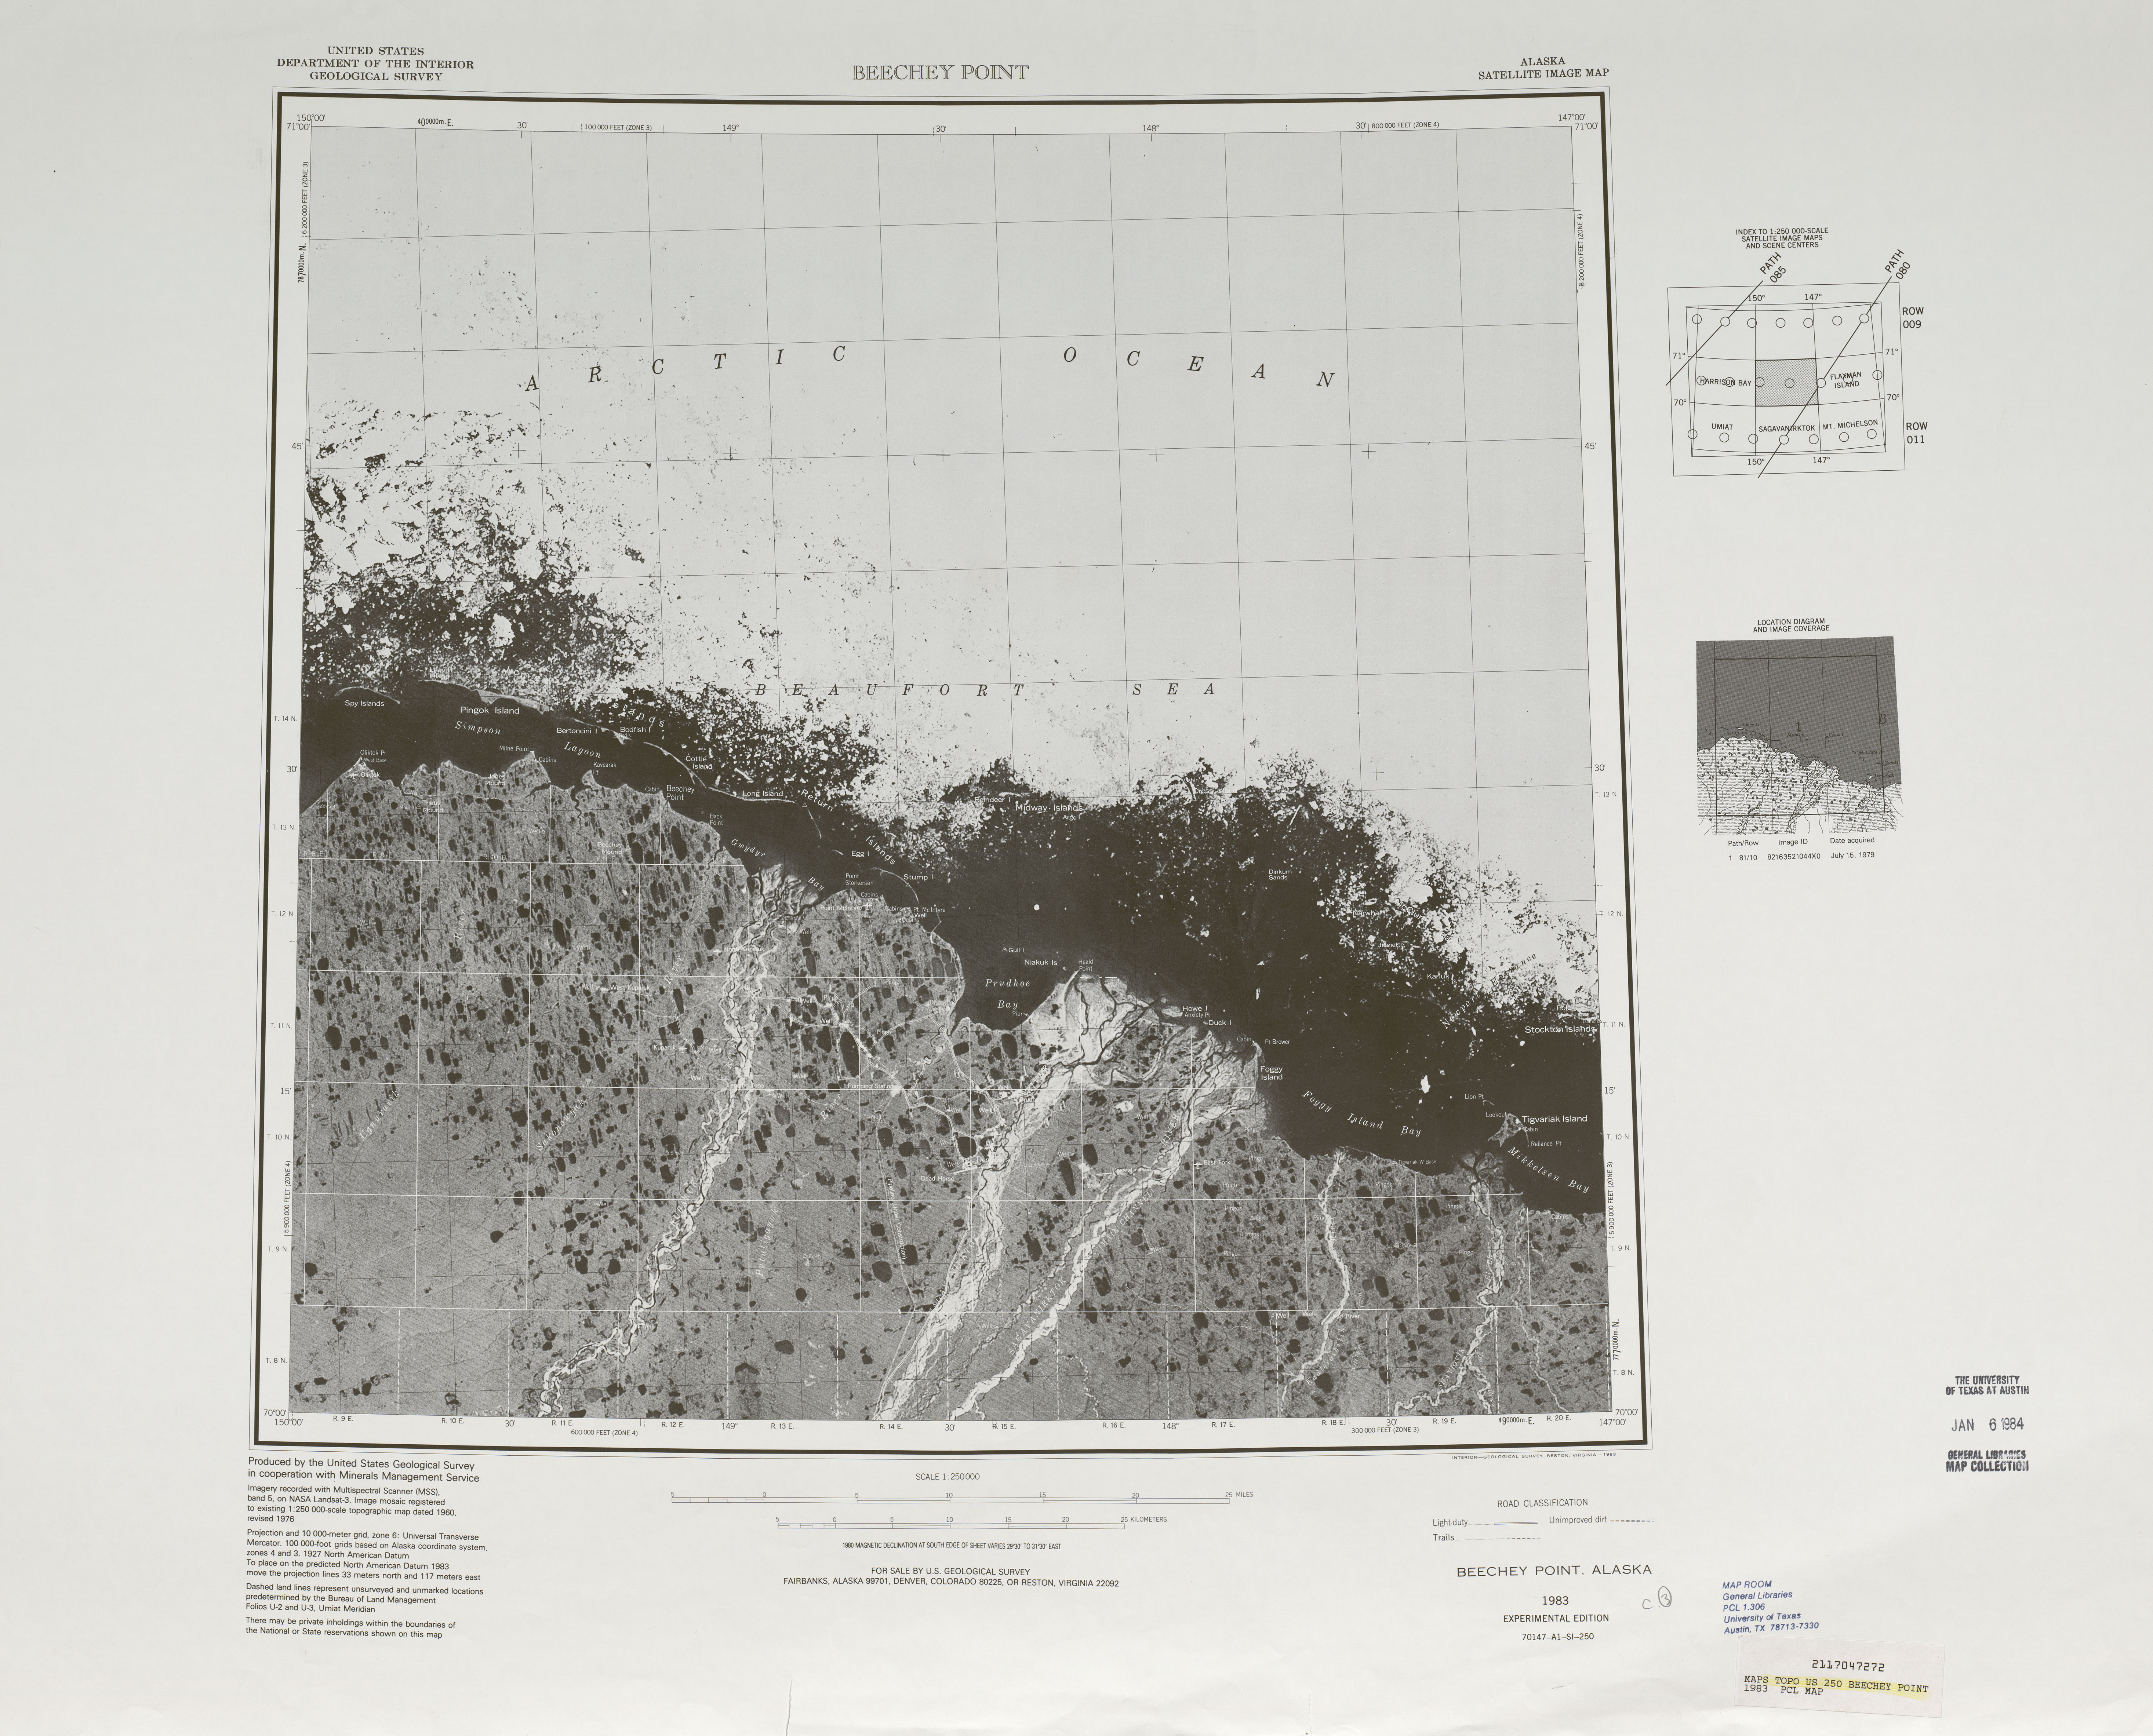 Hoja Beechey Point de la Imagen Satelital de los Estados Unidos 1983